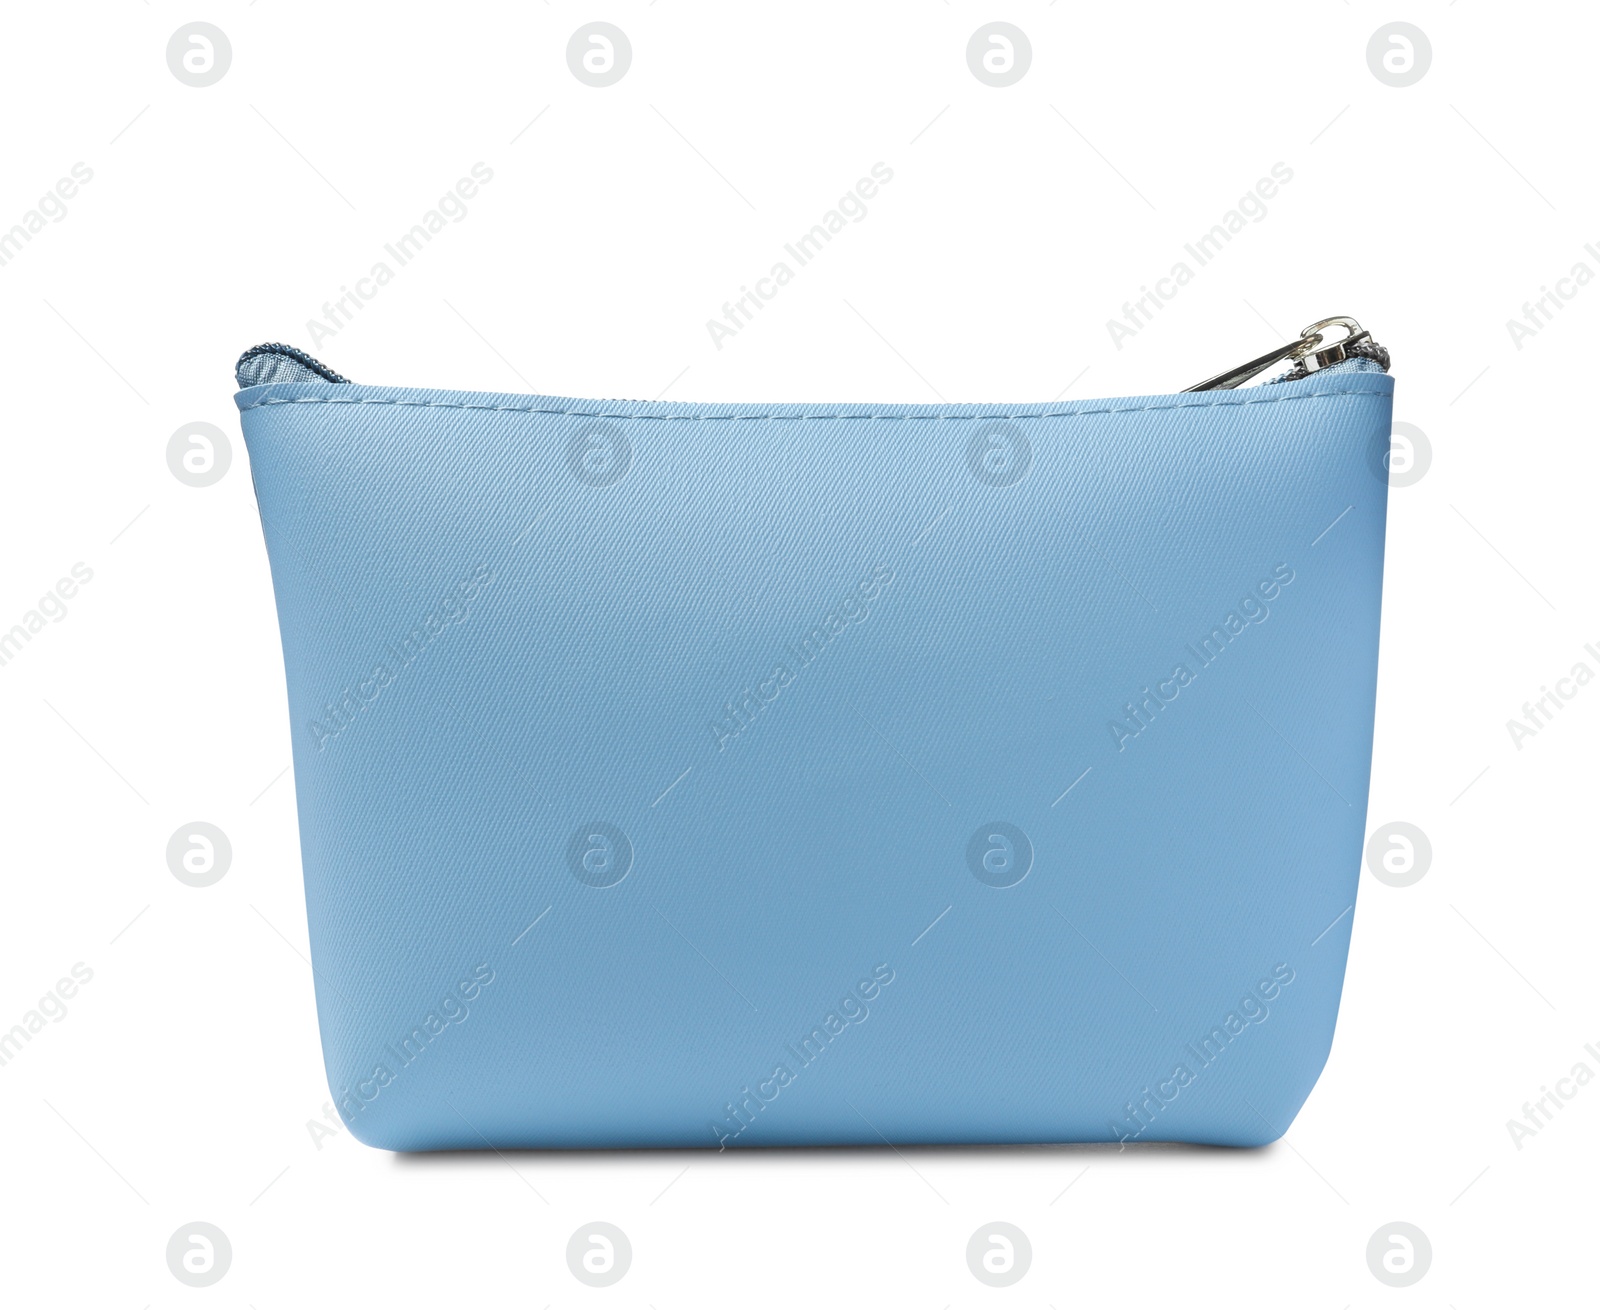 Photo of Stylish light blue cosmetic bag isolated on white